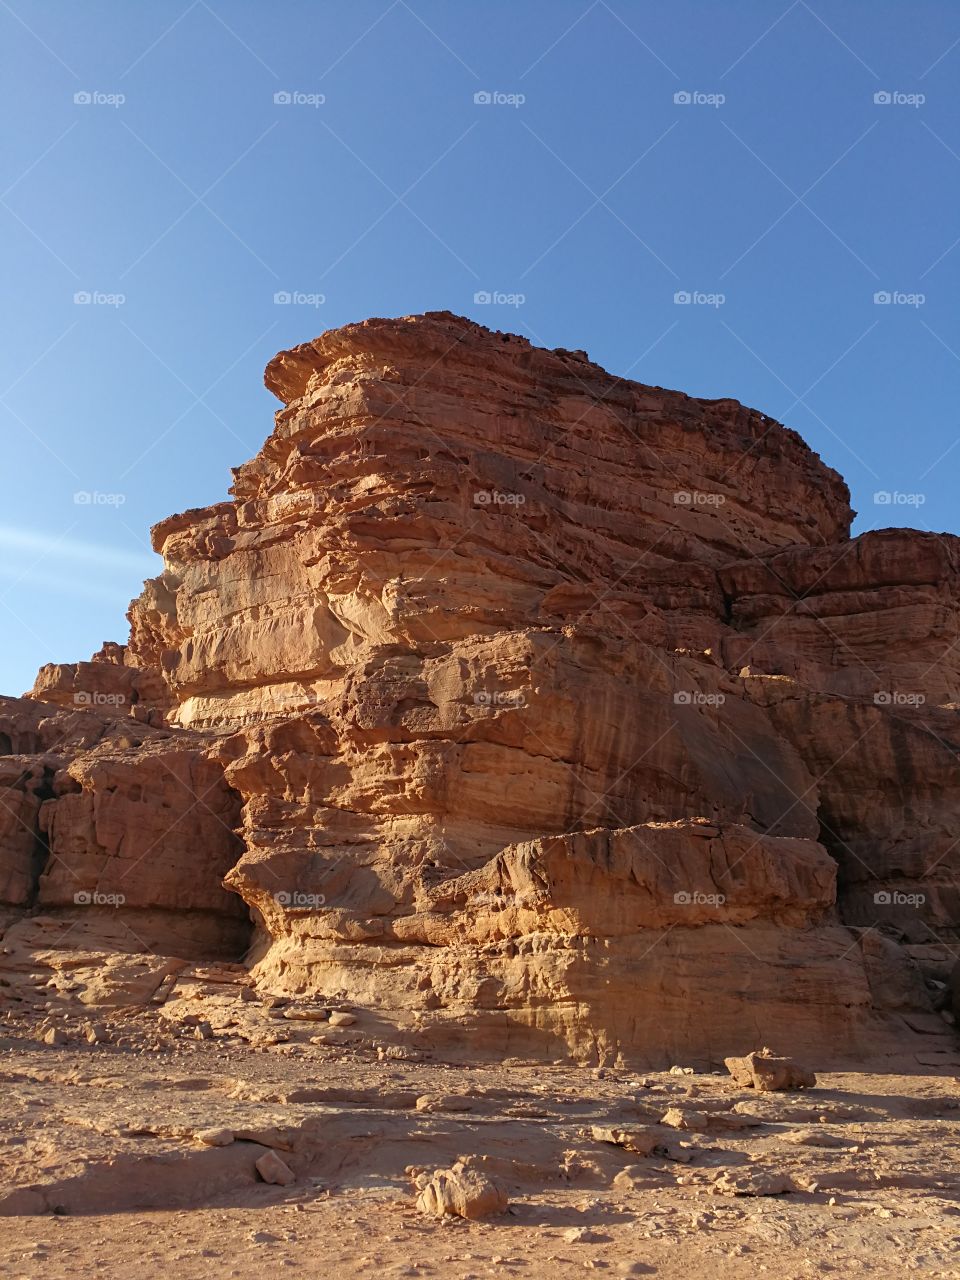 Wadi rum, Mars